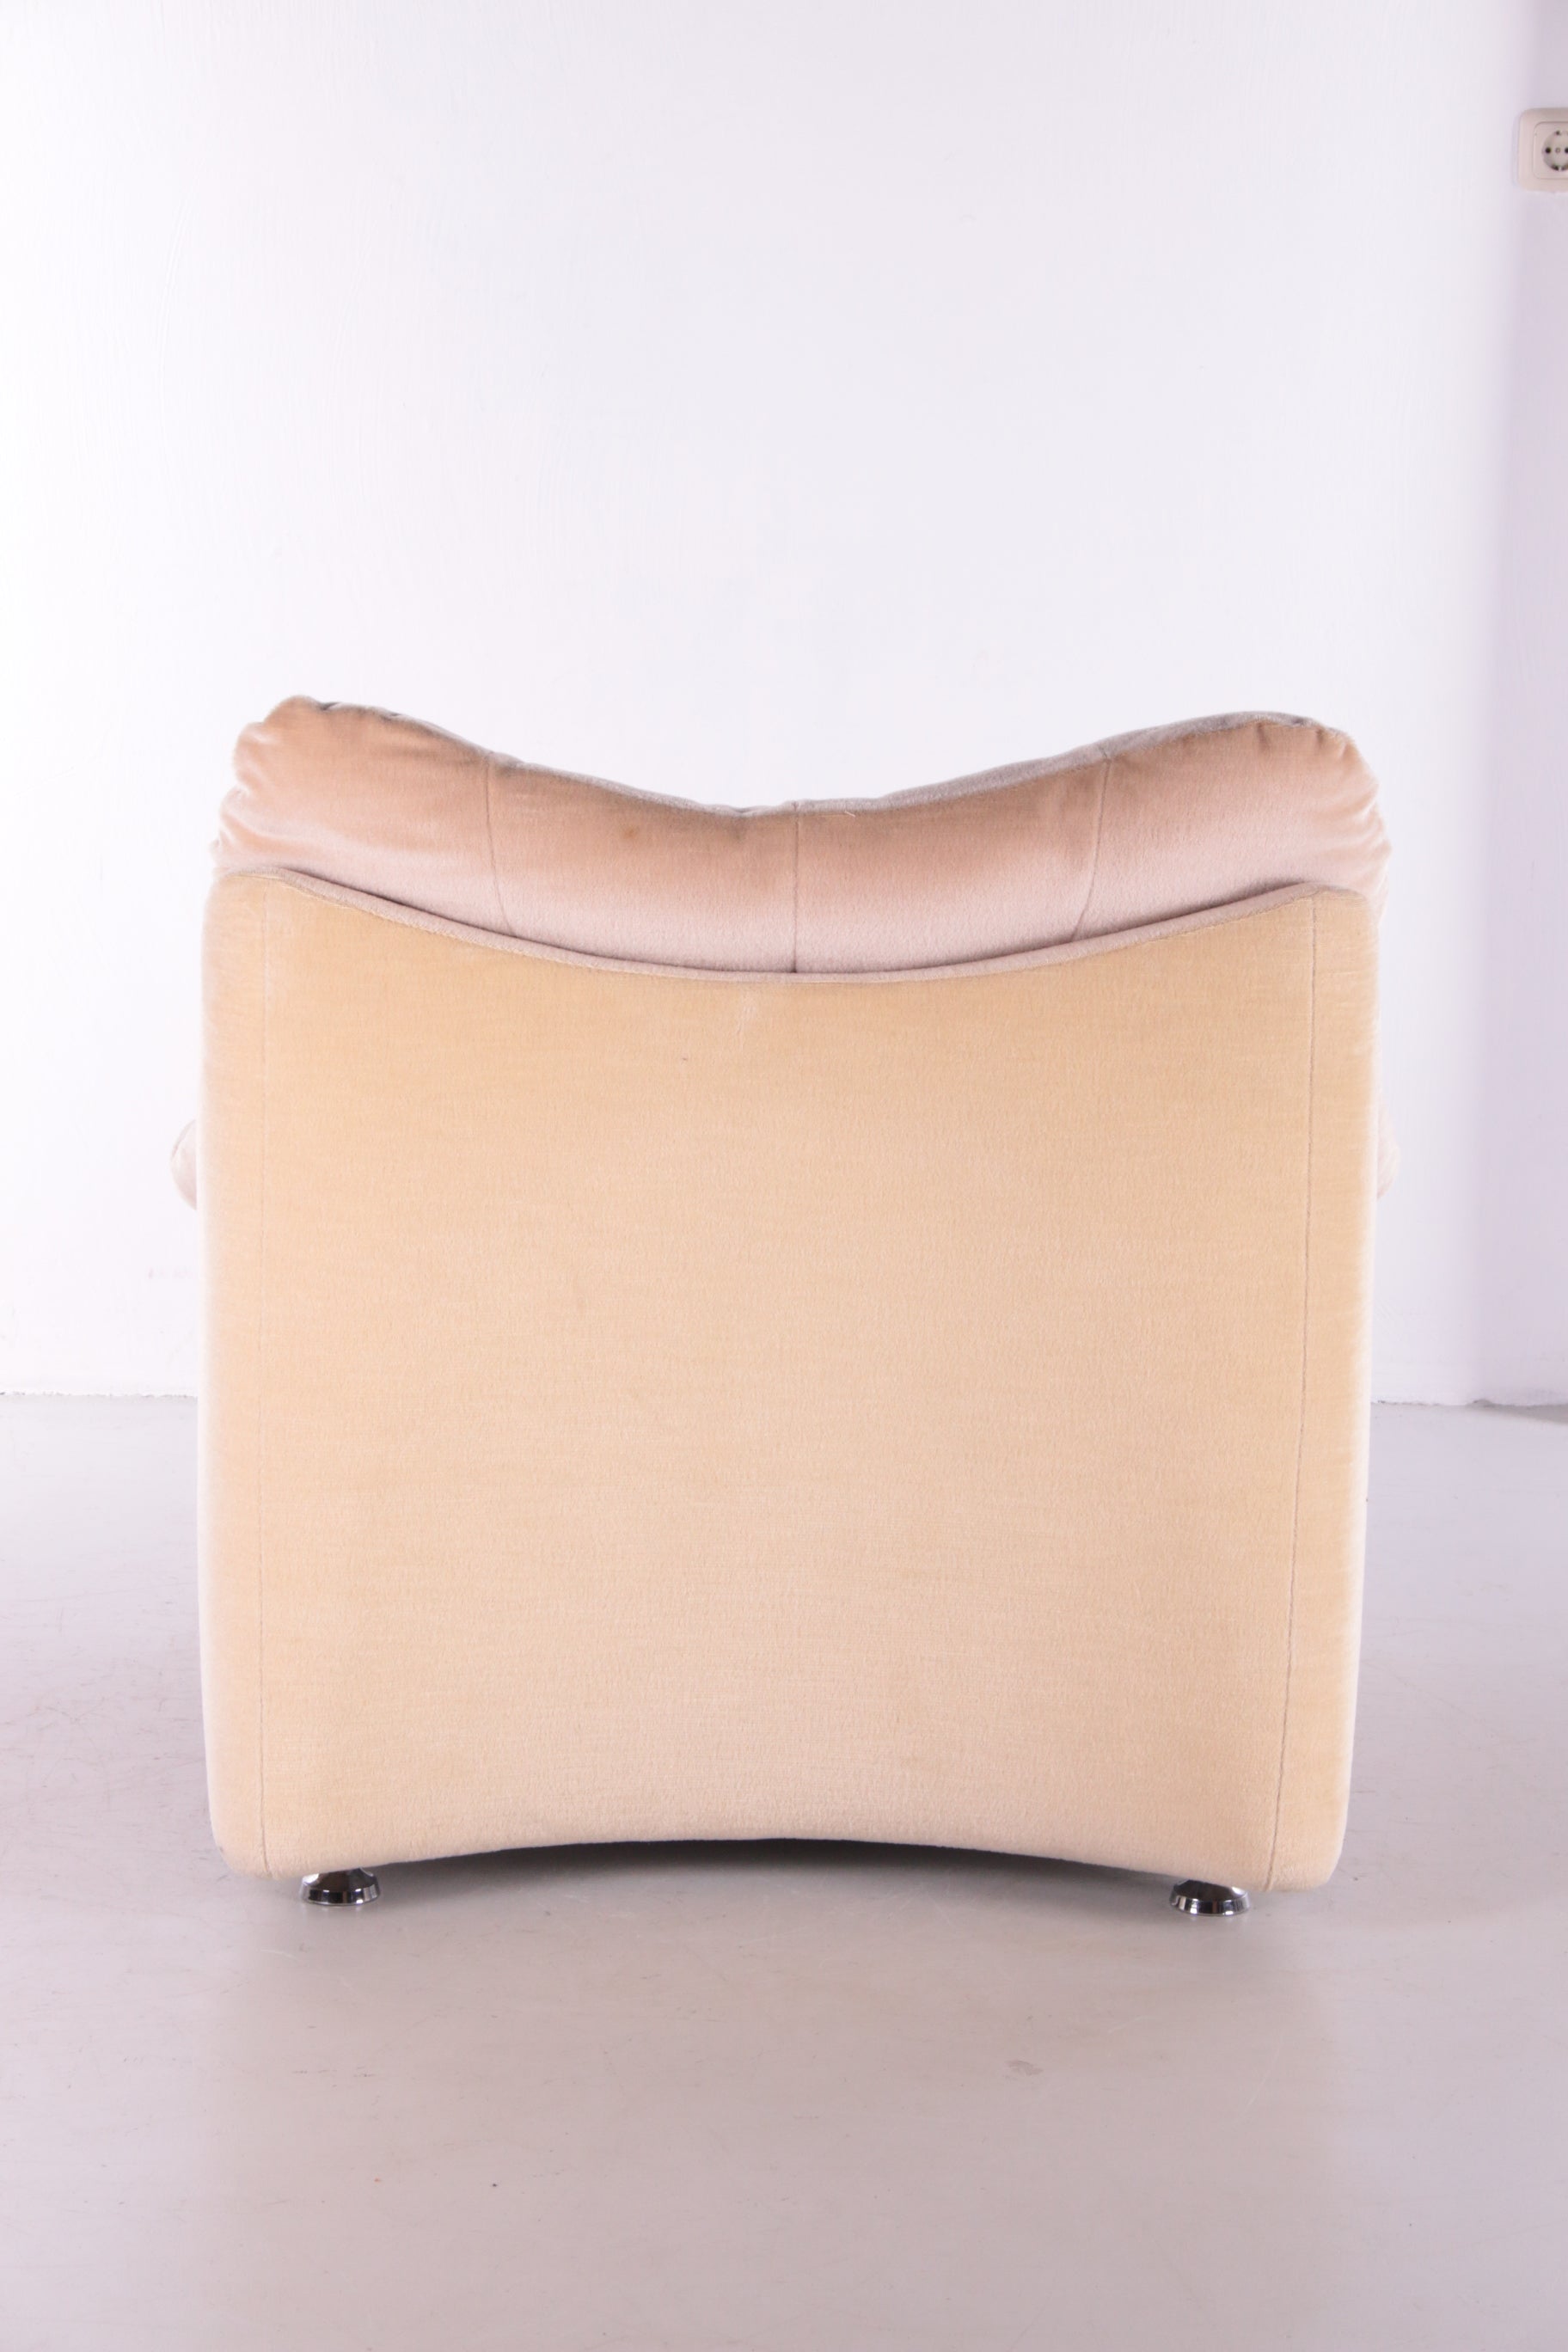 Vintage design lounge chair Velvet from the 70s achterkant